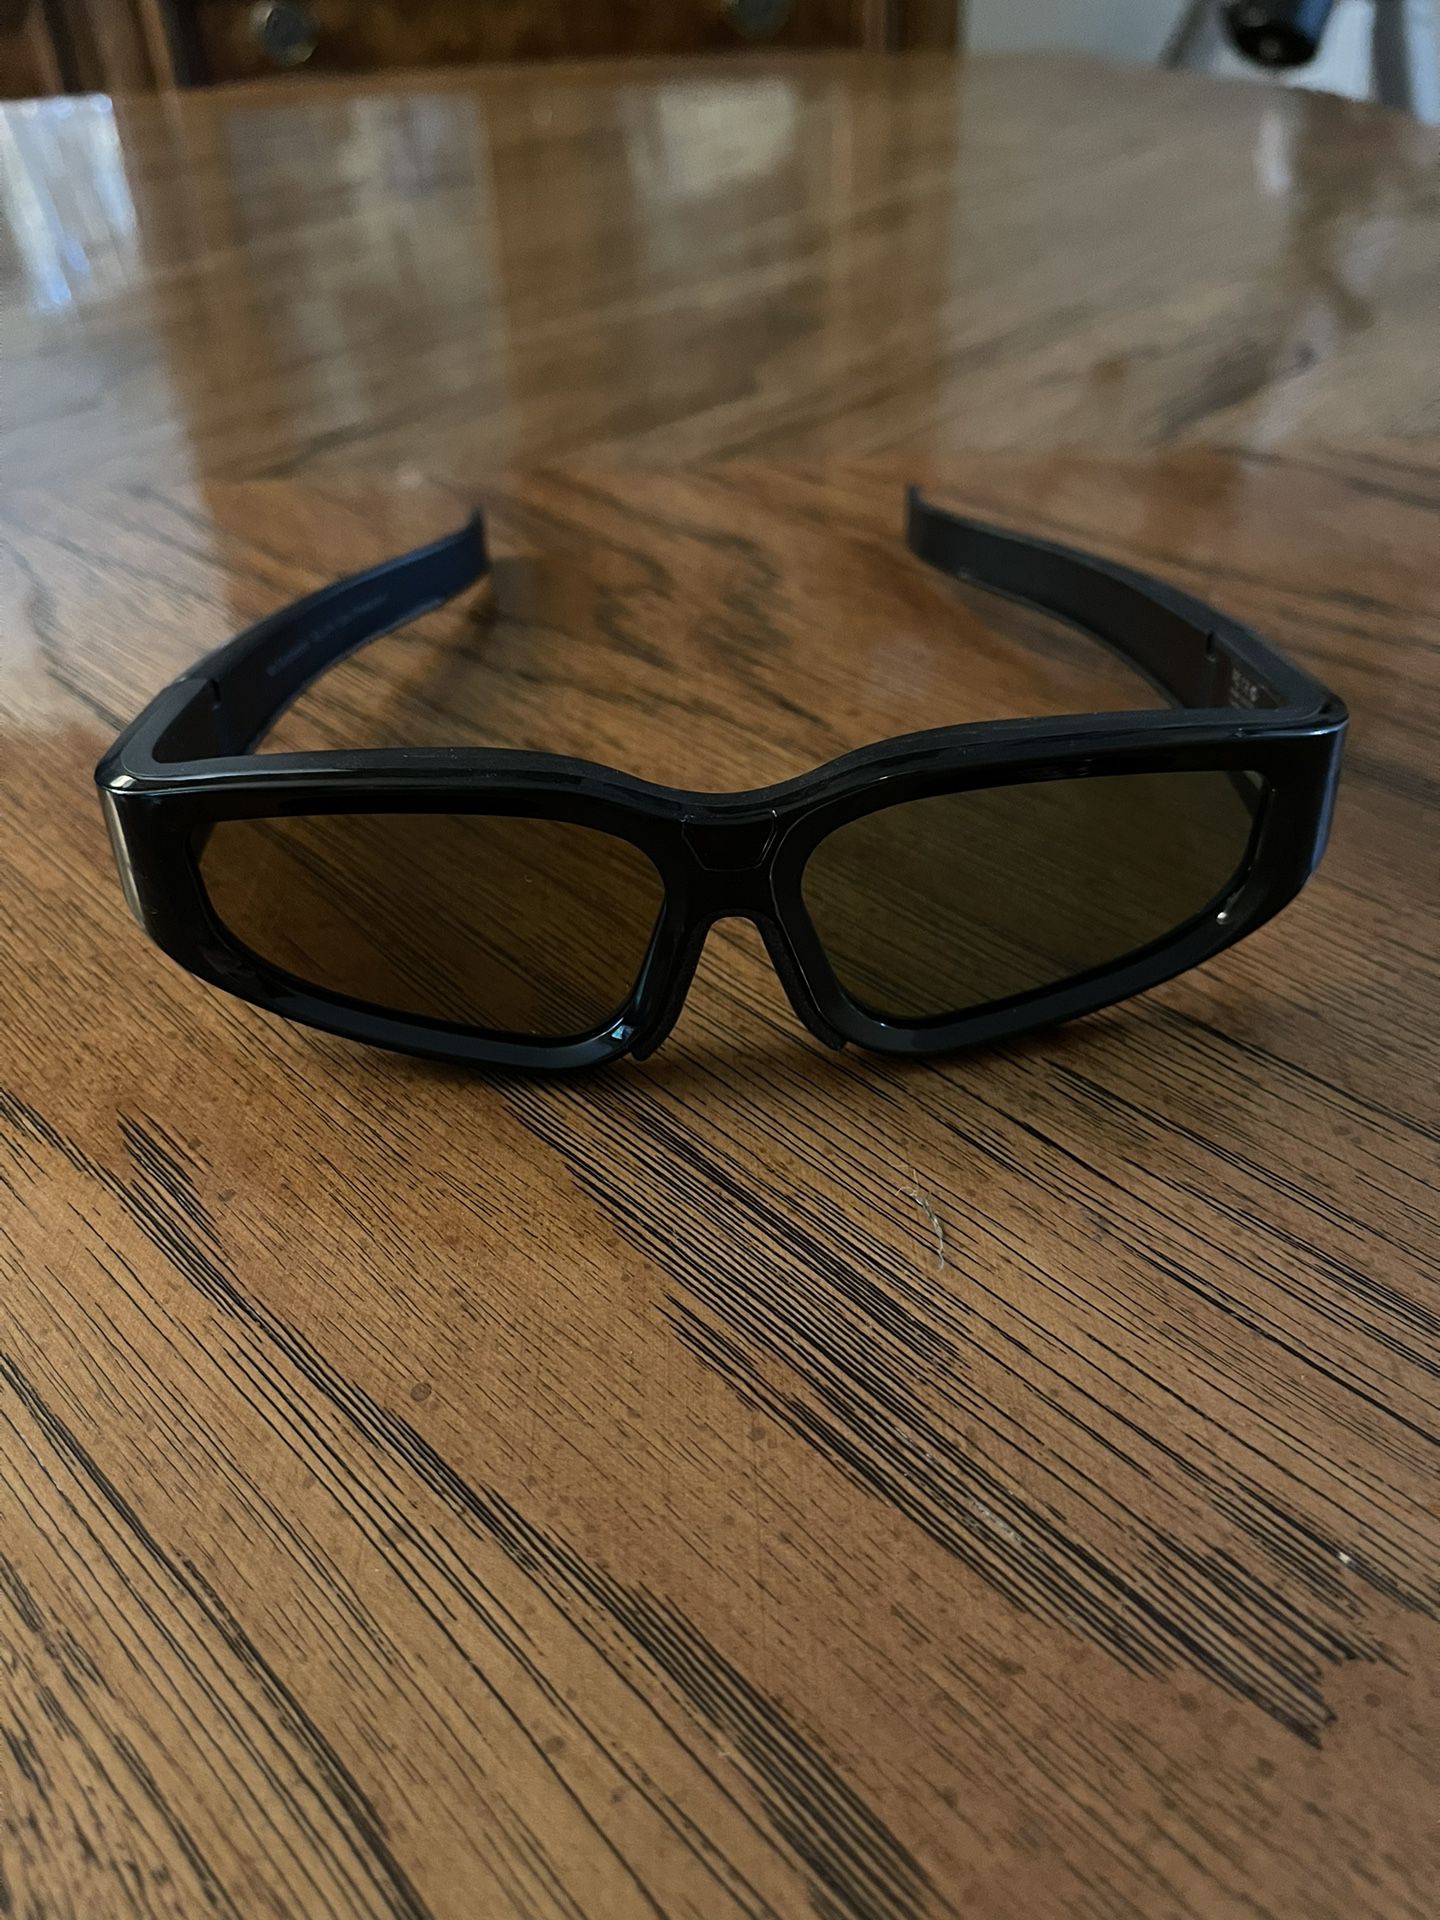 LG Model AG-5100 3D Glasses (See Description)